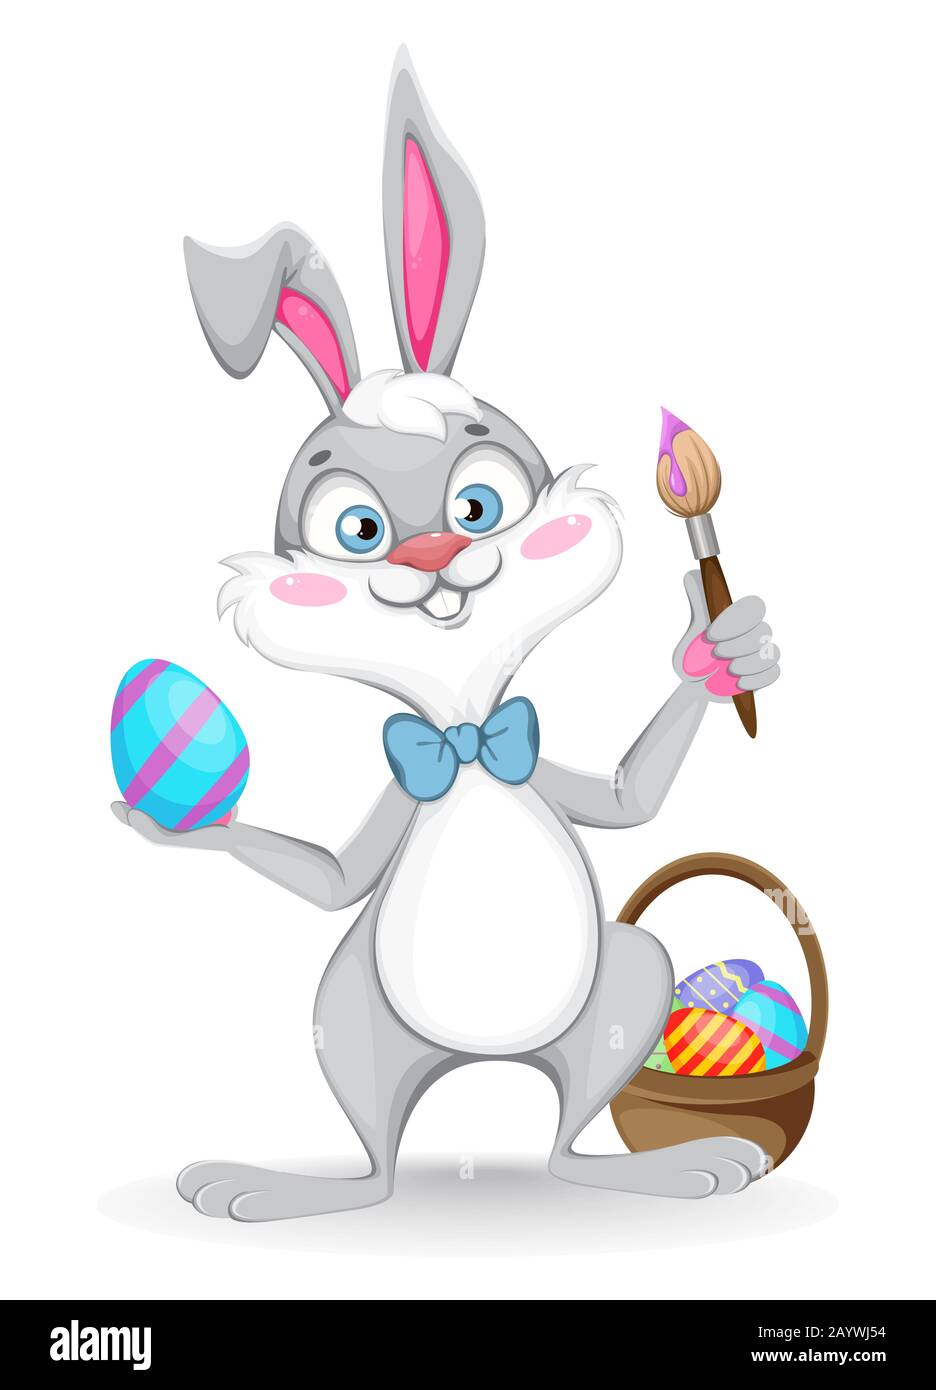 Frohe Ostern Grußkarte. Lustiger Zeichentrickkaninchen hält Pinsel und farbiges Ei. Vektor-Darstellung auf weißem Hintergrund Stock Vektor